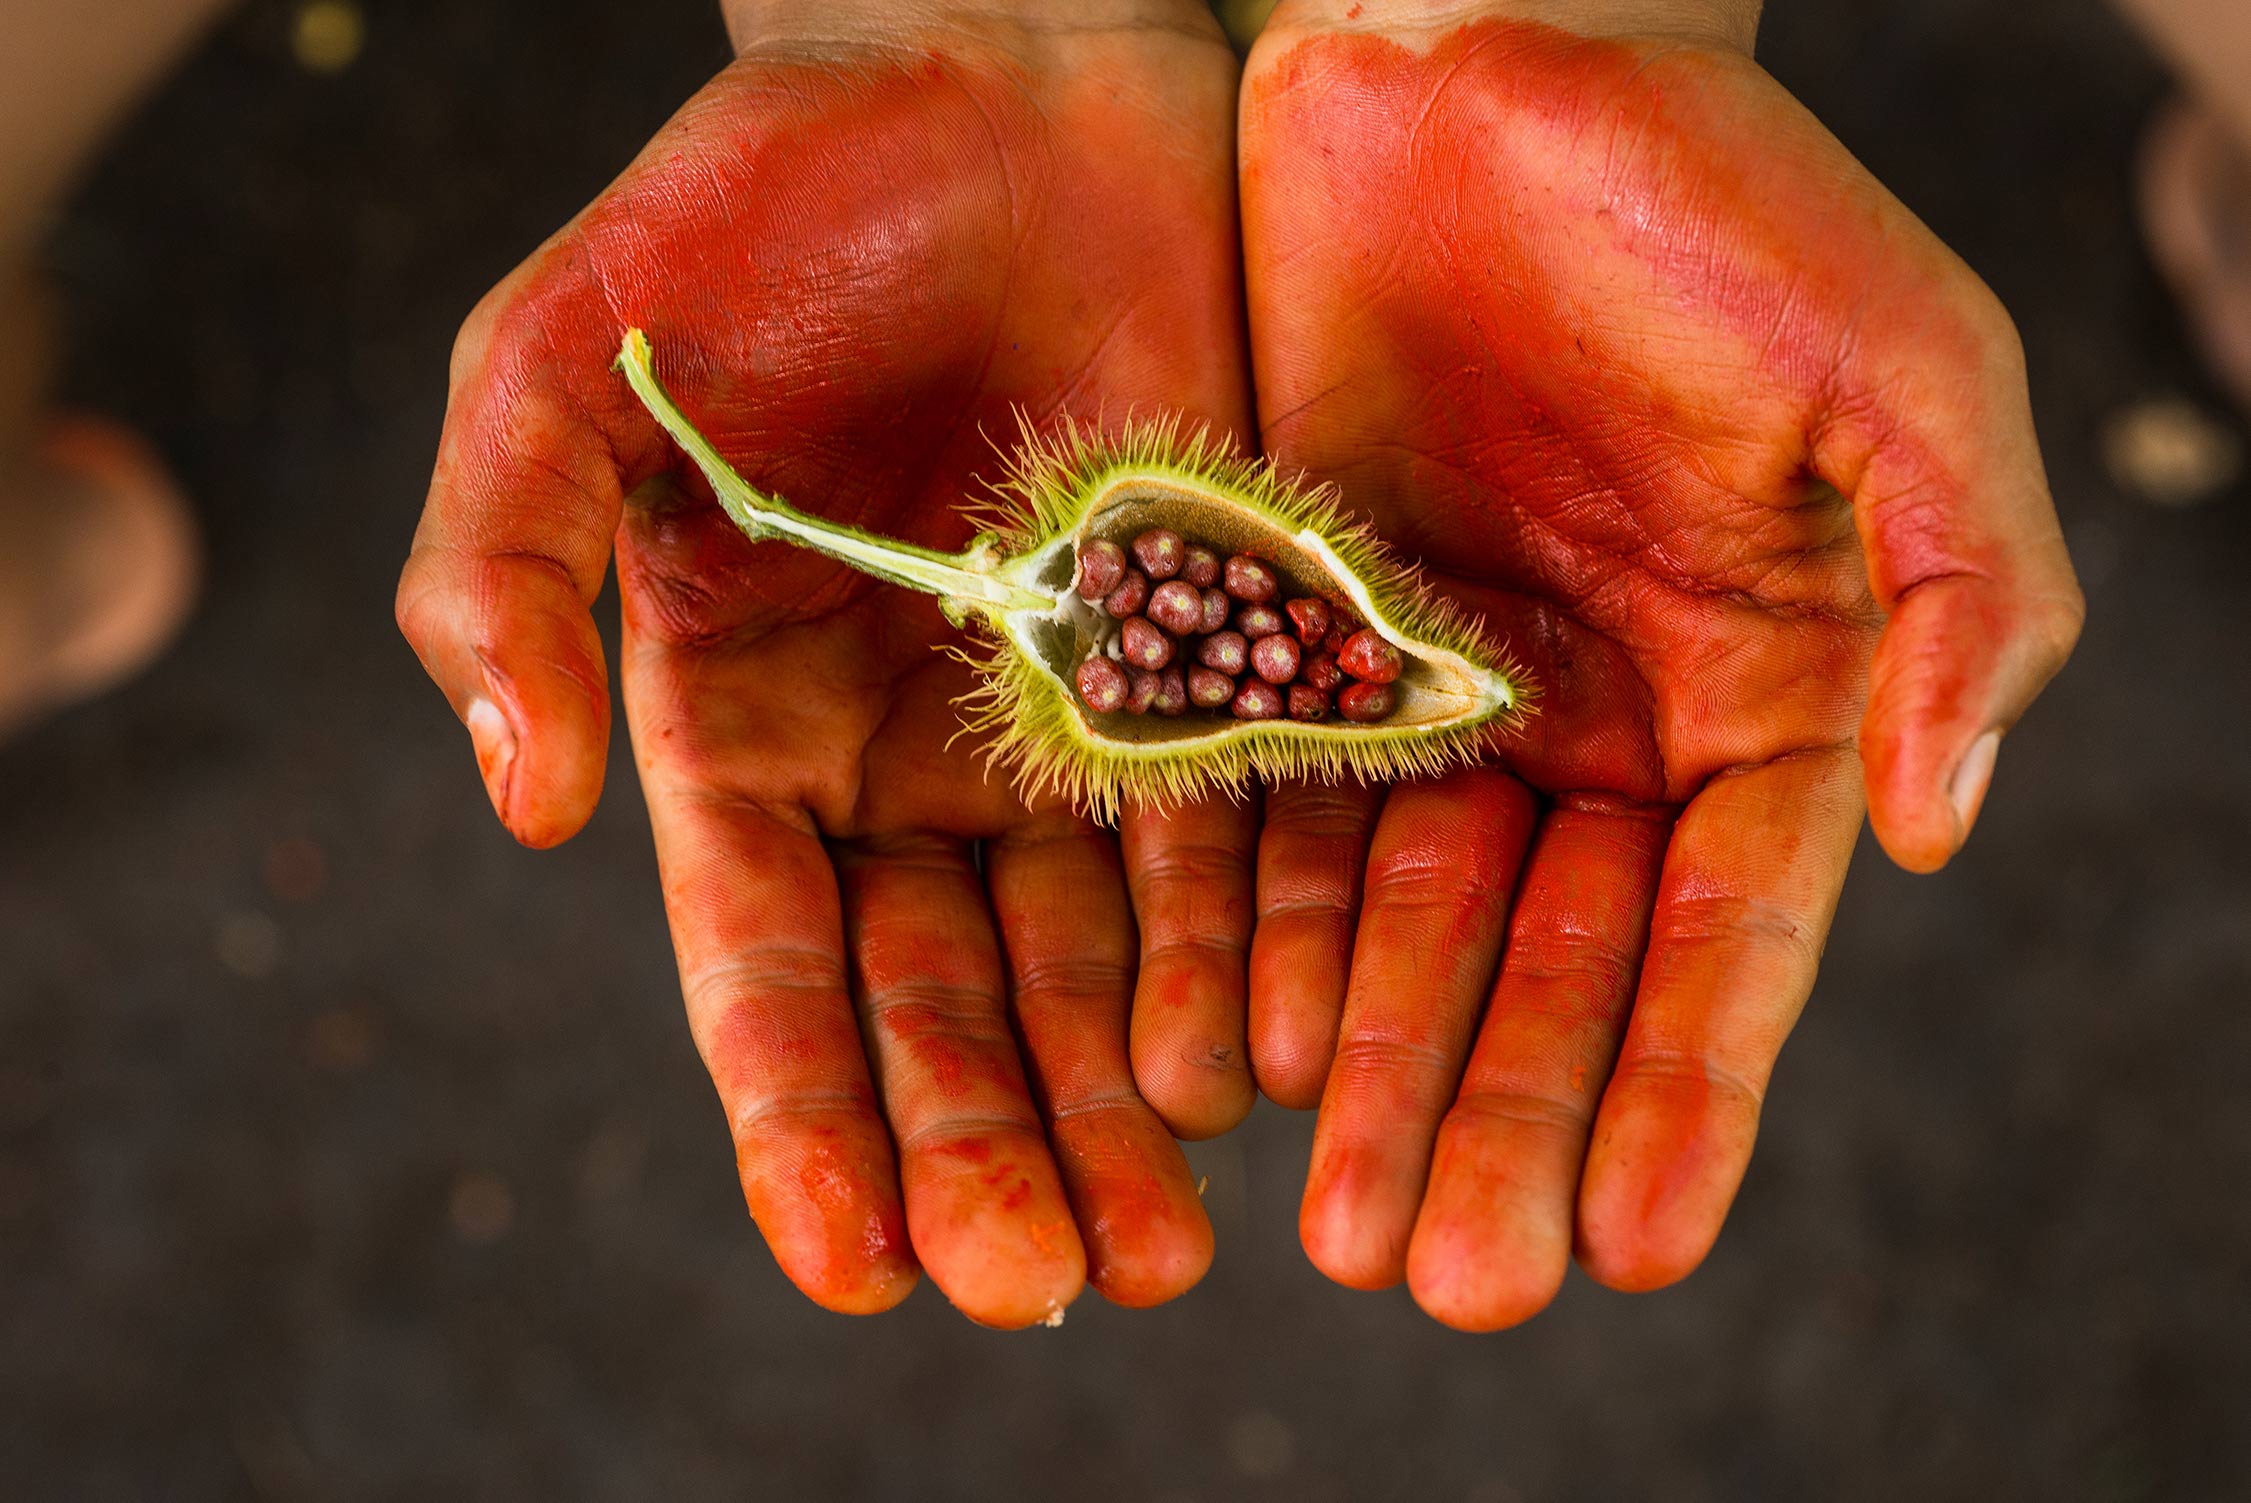 Rot bemalte offene Handflächen halten eine halbierte Achiotekapsel mit roten Beeren